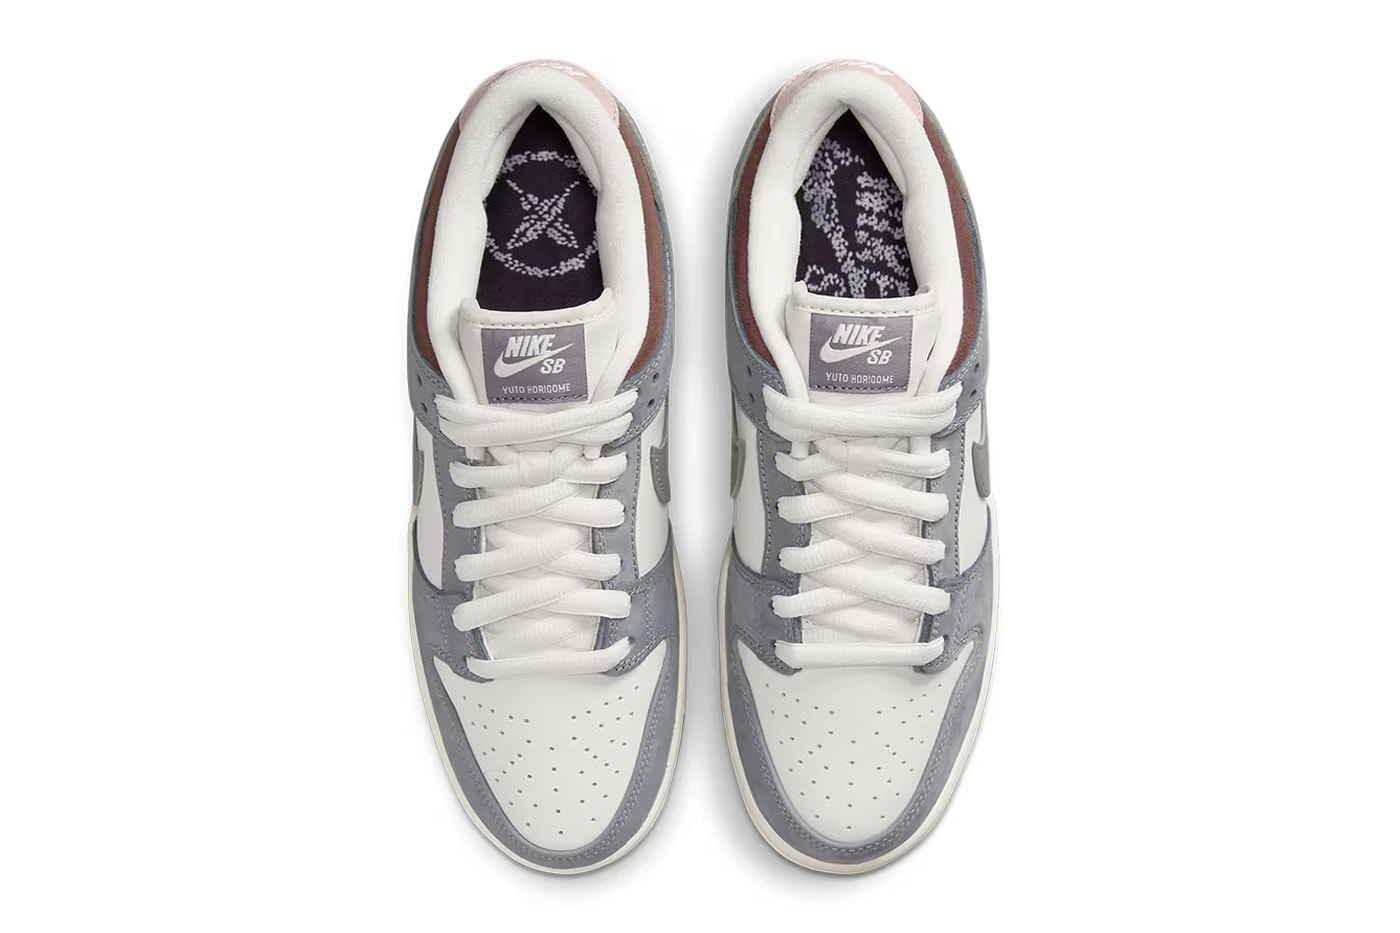 堀米雄斗 x Nike SB Dunk Low 最新聯名鞋款「Wolf Grey」線上發售情報正式公開